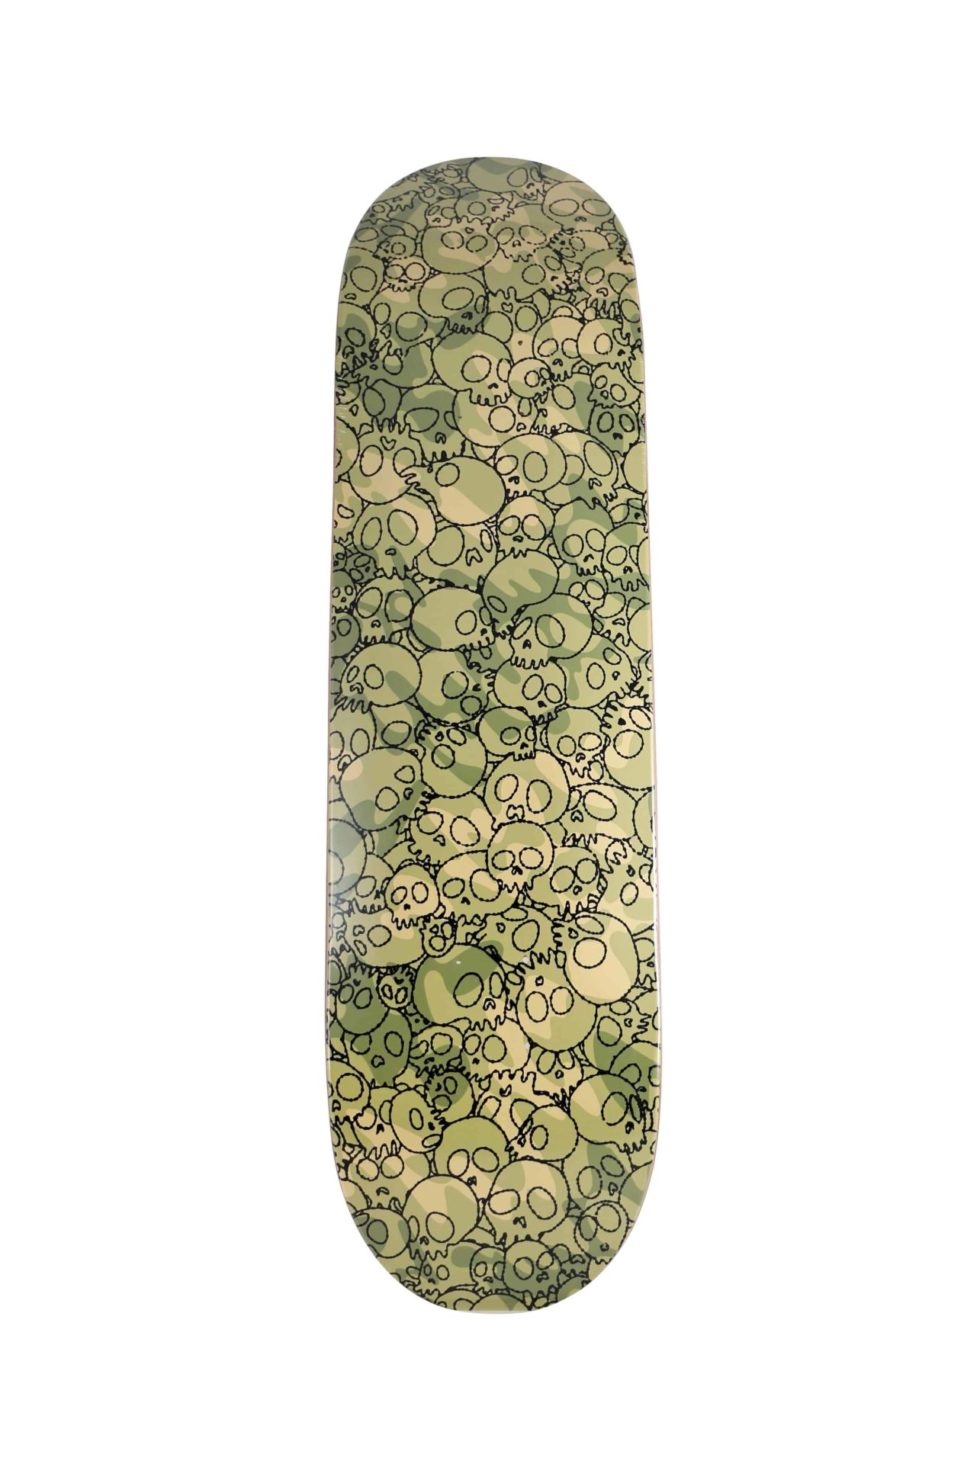 Lot #15117 – Takashi Murakami Skulls Green Camo Skateboard Skate Deck Skateboard Decks Kaikai Kiki